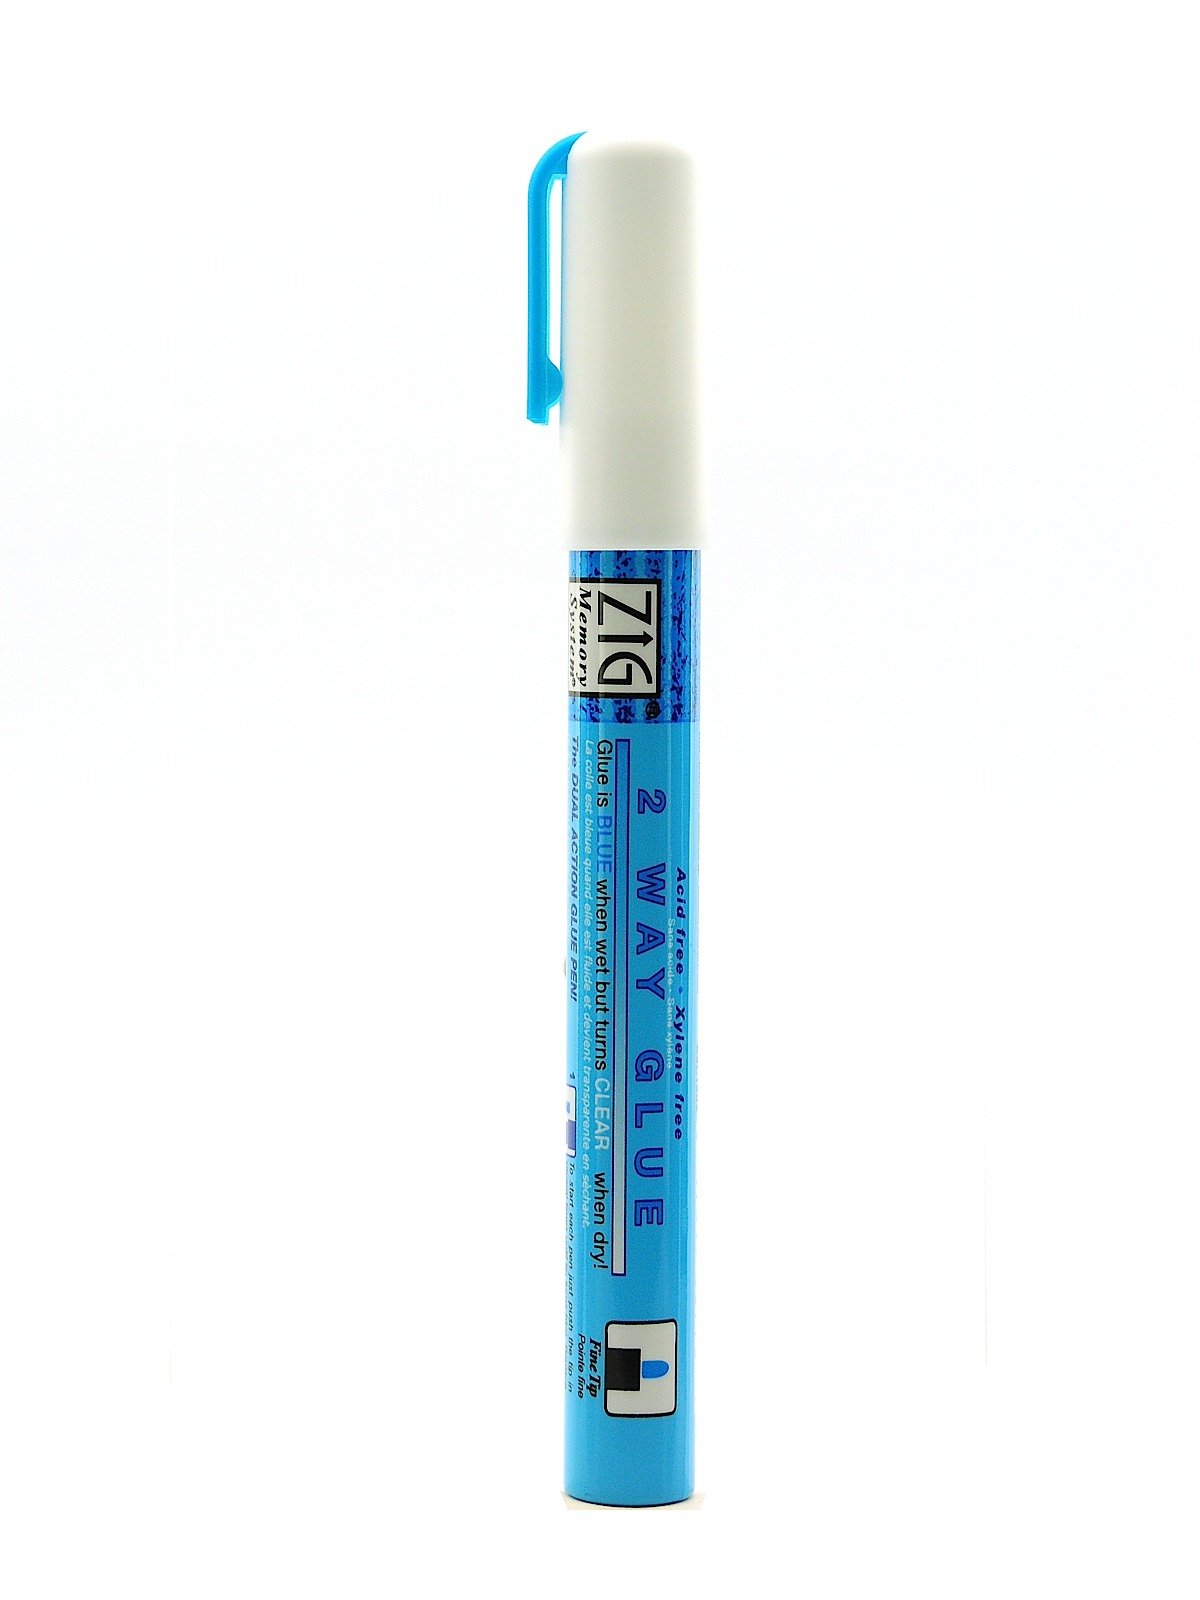 Zig 2-Way Glue Pen - The Deckle Edge